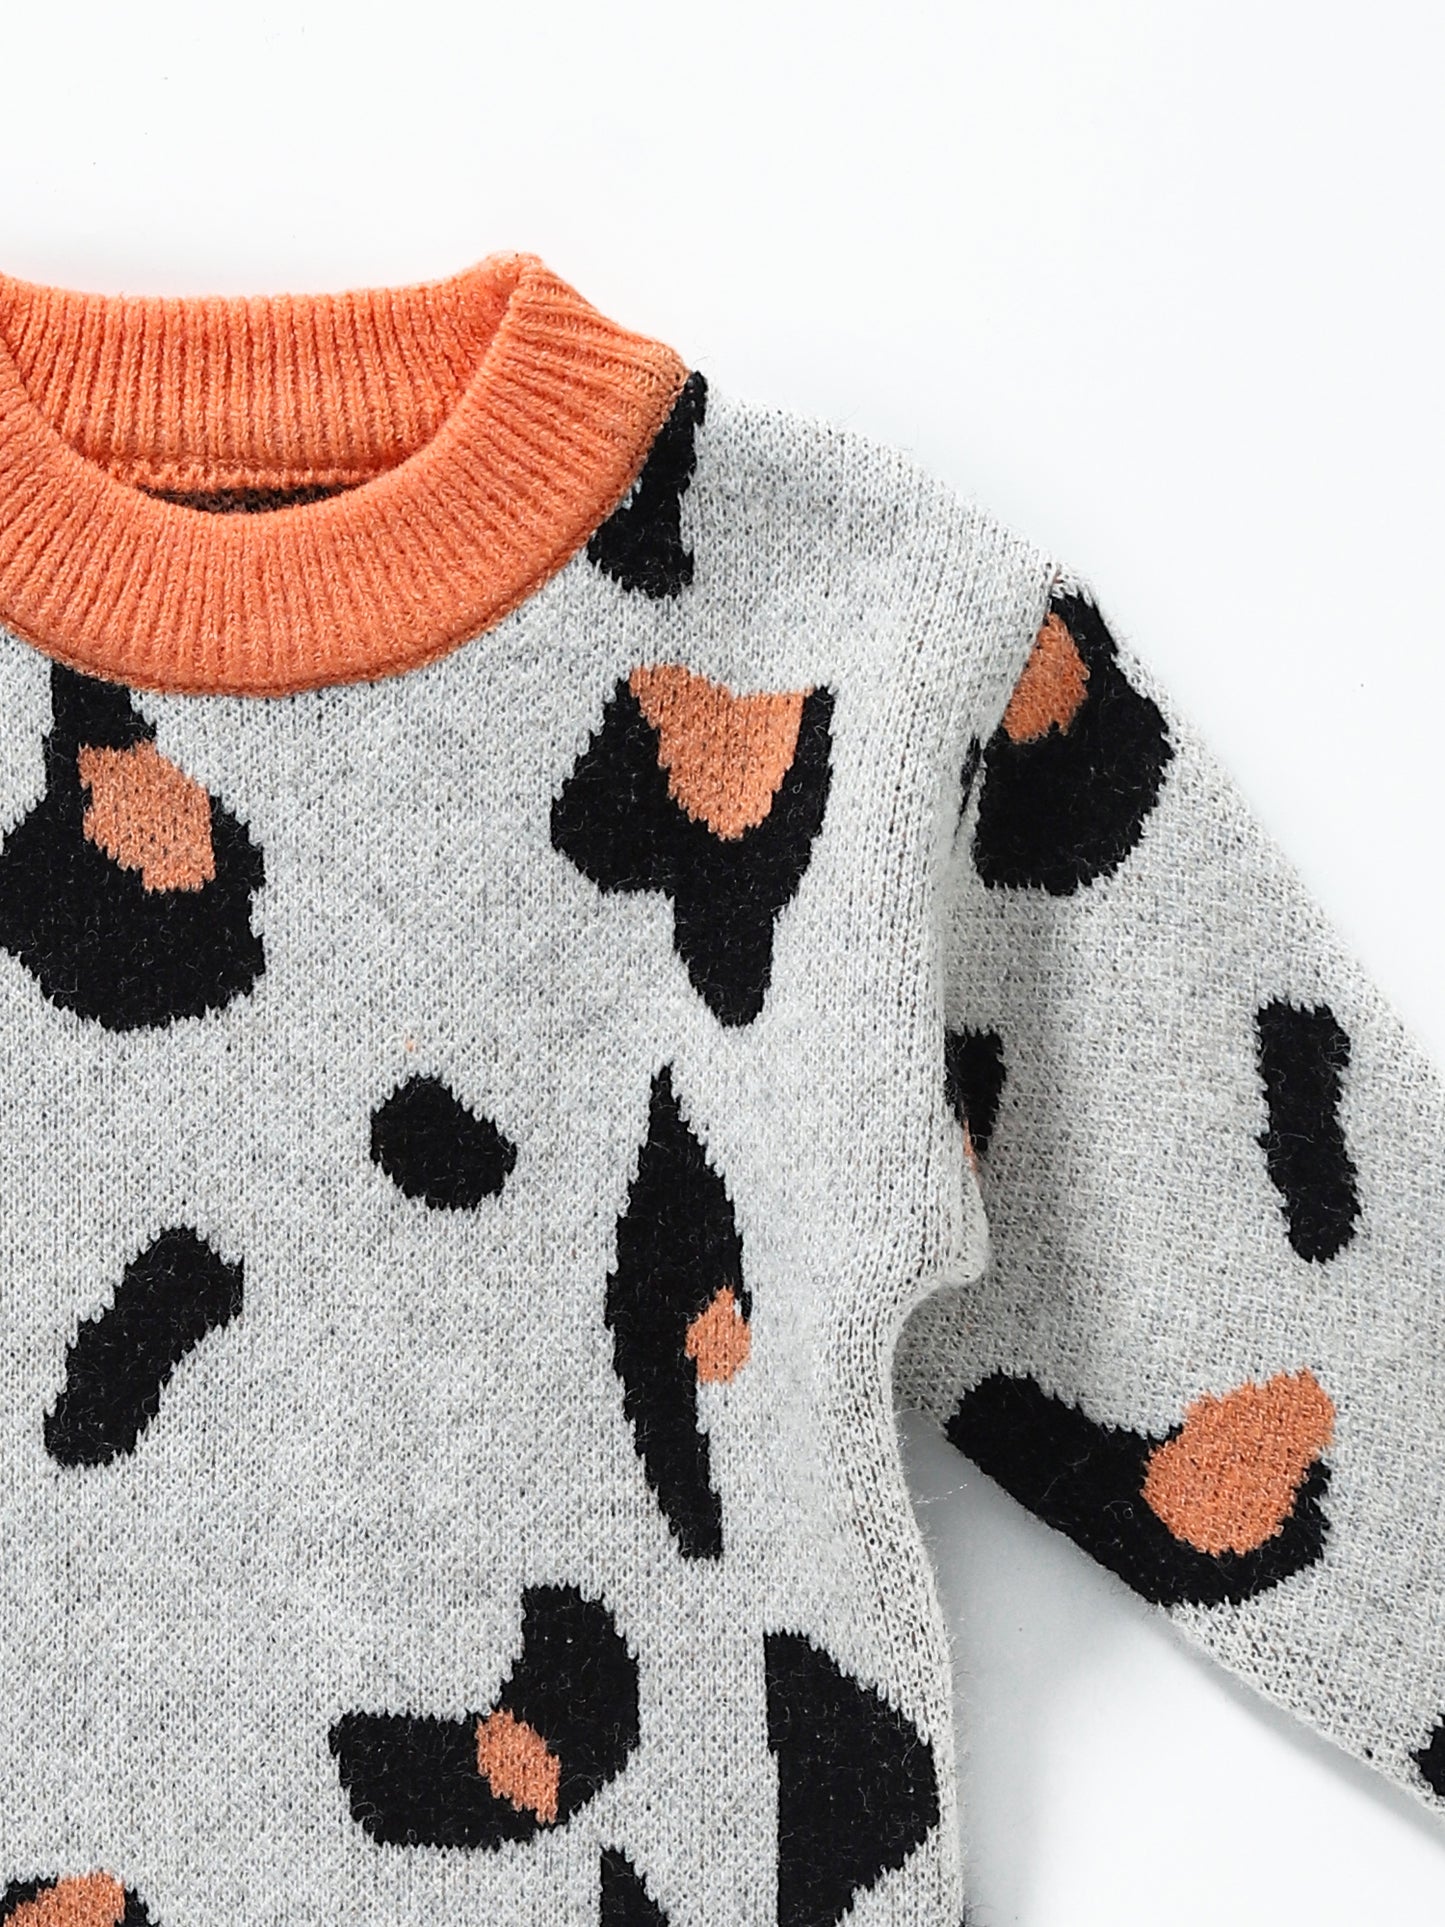 Baby Girls Cheetah Sweater